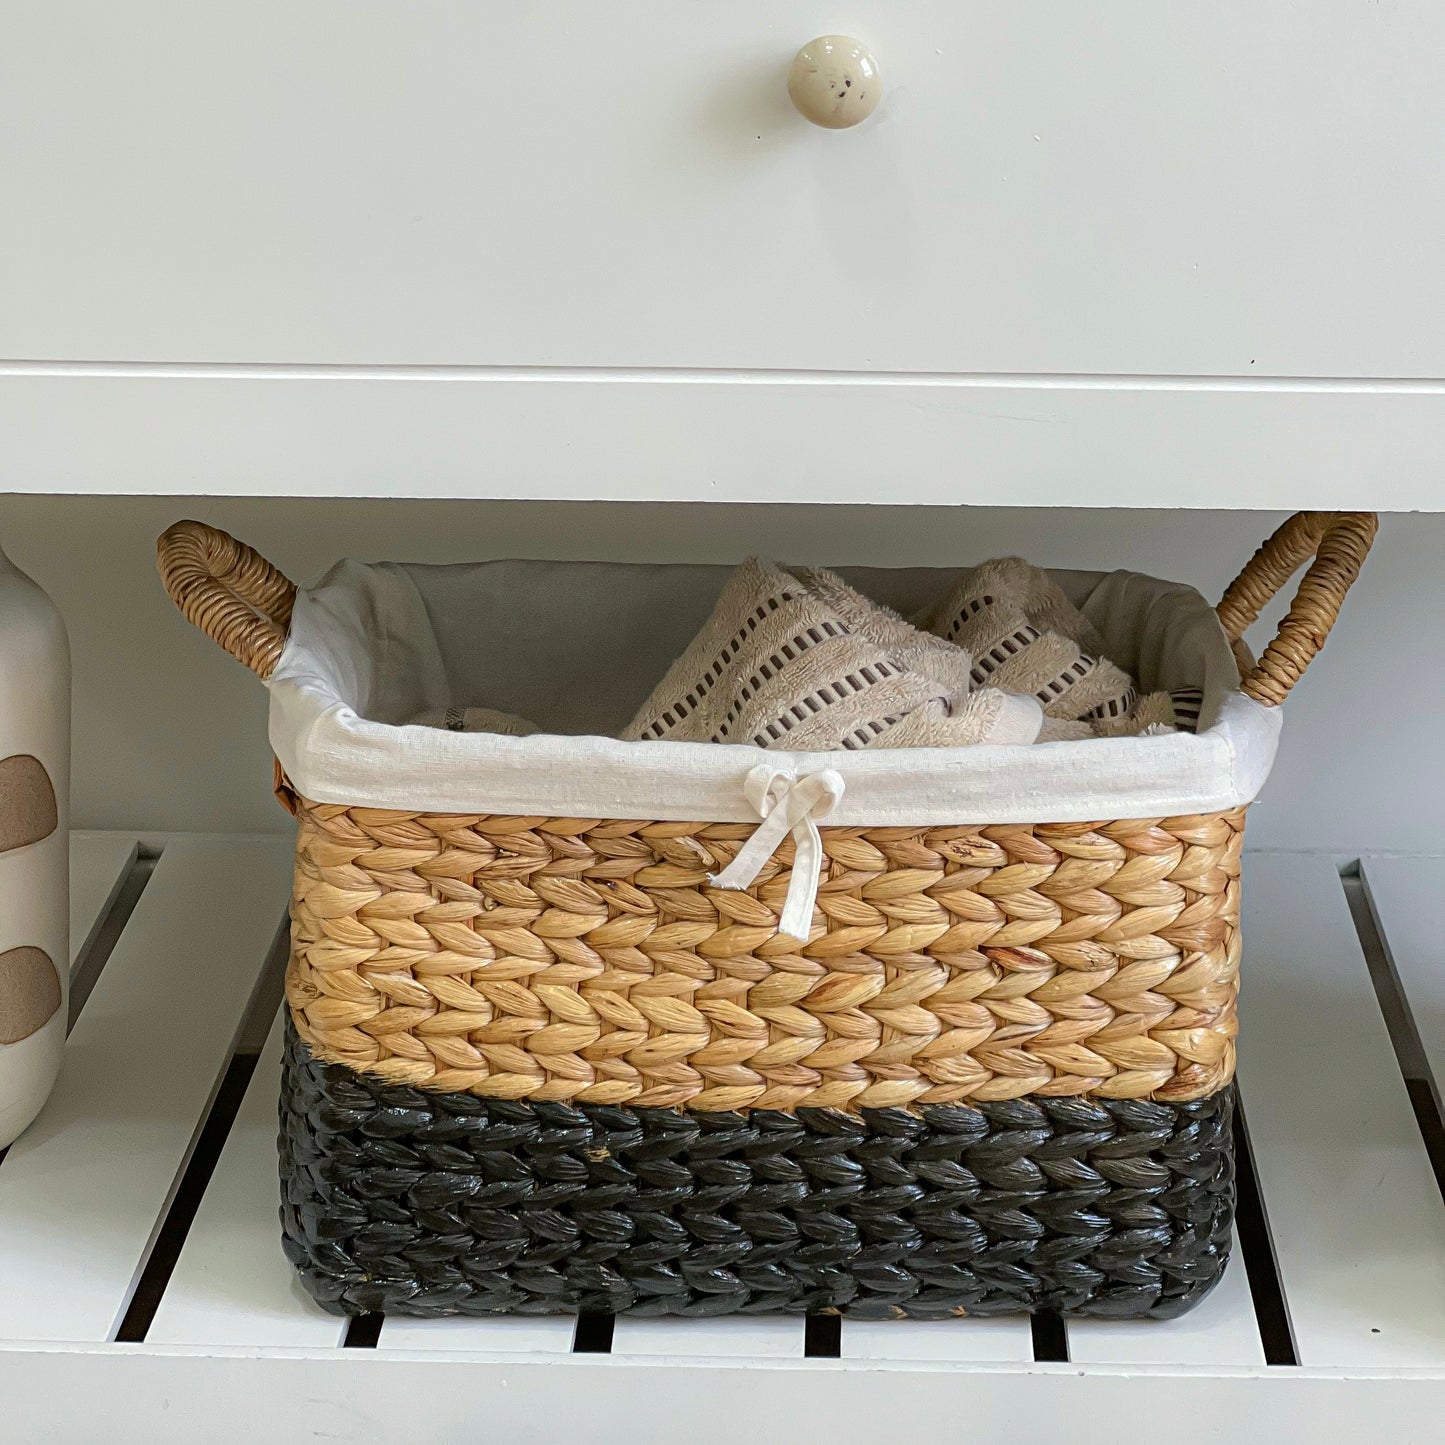 Bath towel basket with handle